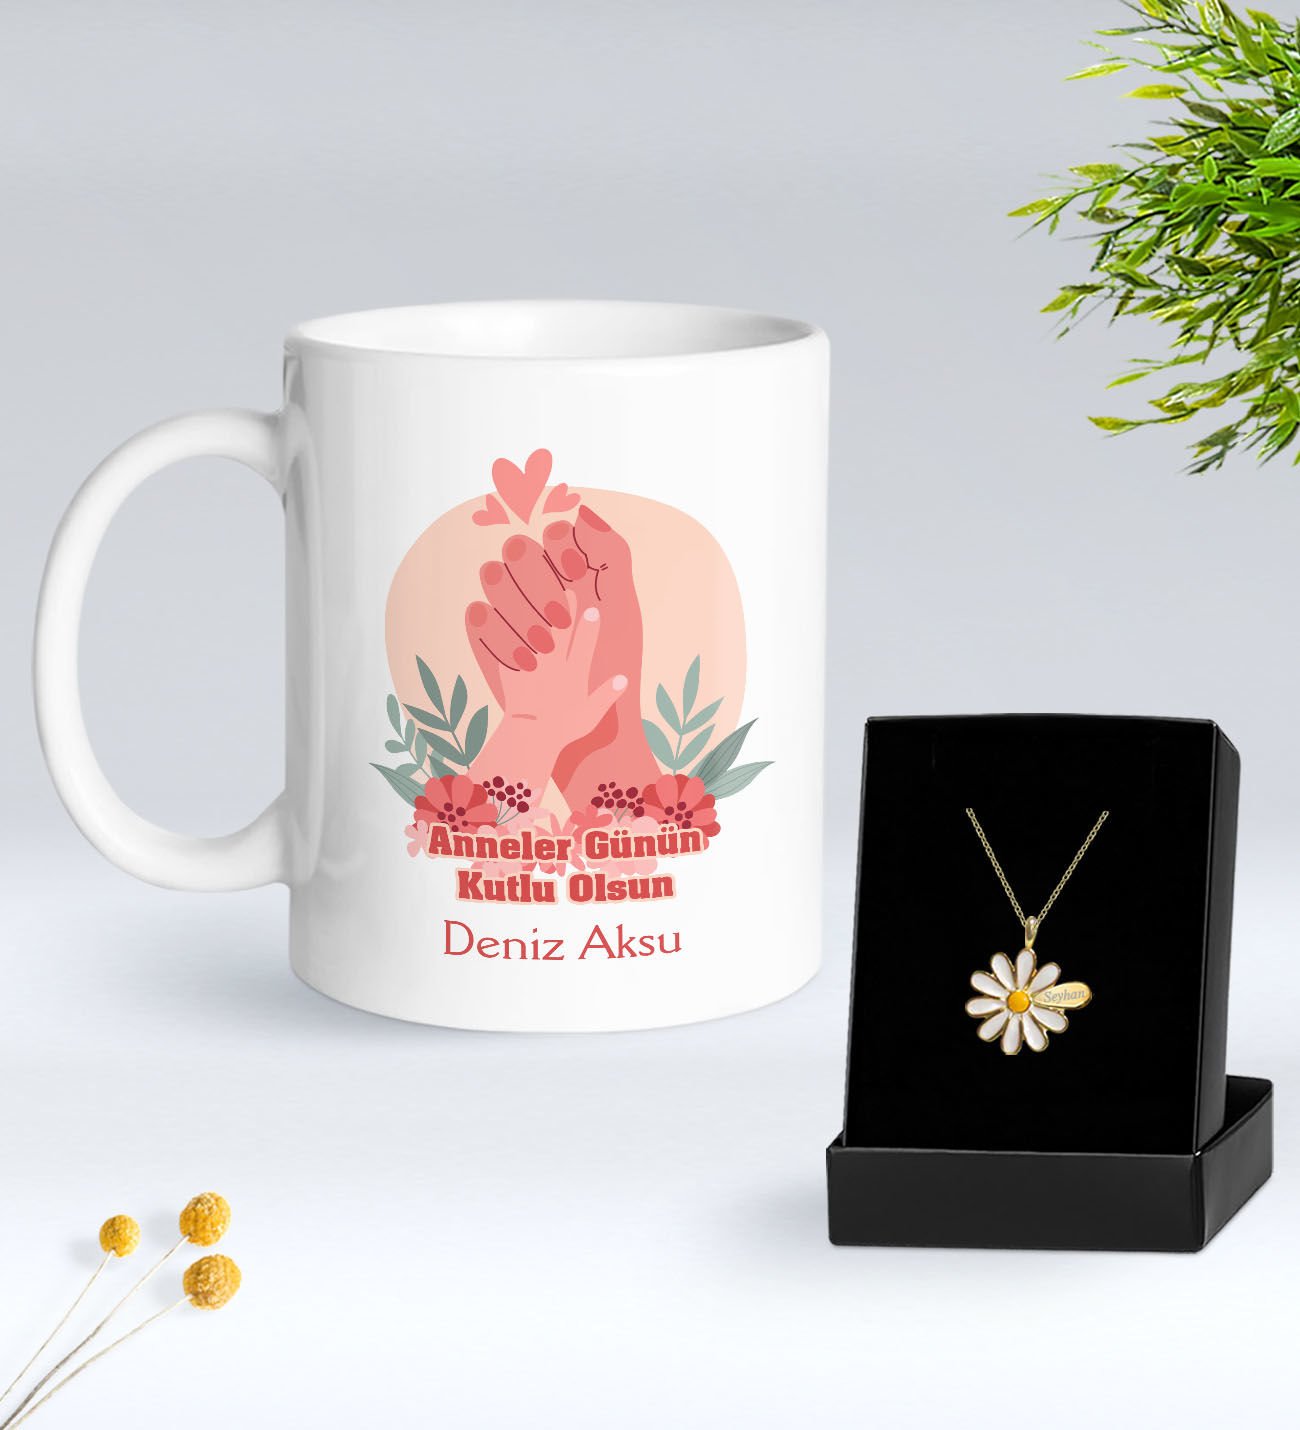 BK Gift Kişiye Özel Anneler Günü Tasarımlı Beyaz Kupa ve Papatya Kolye Hediye Seti - 4, Anneler Günü Hediyeleri, Anneye Hediye